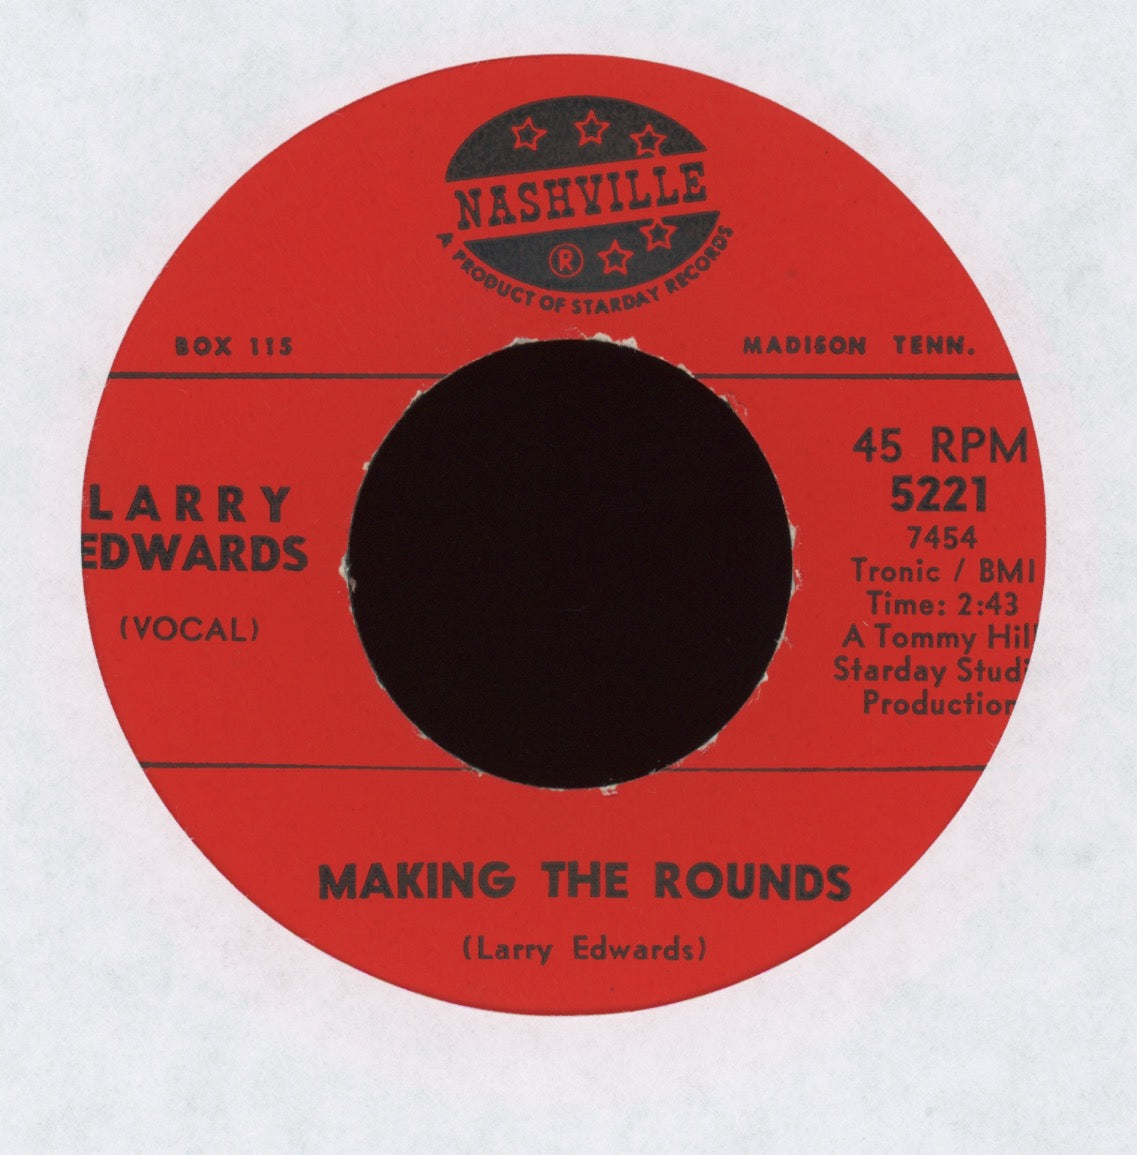 Larry Edwards - Making the Rounds on Nashville